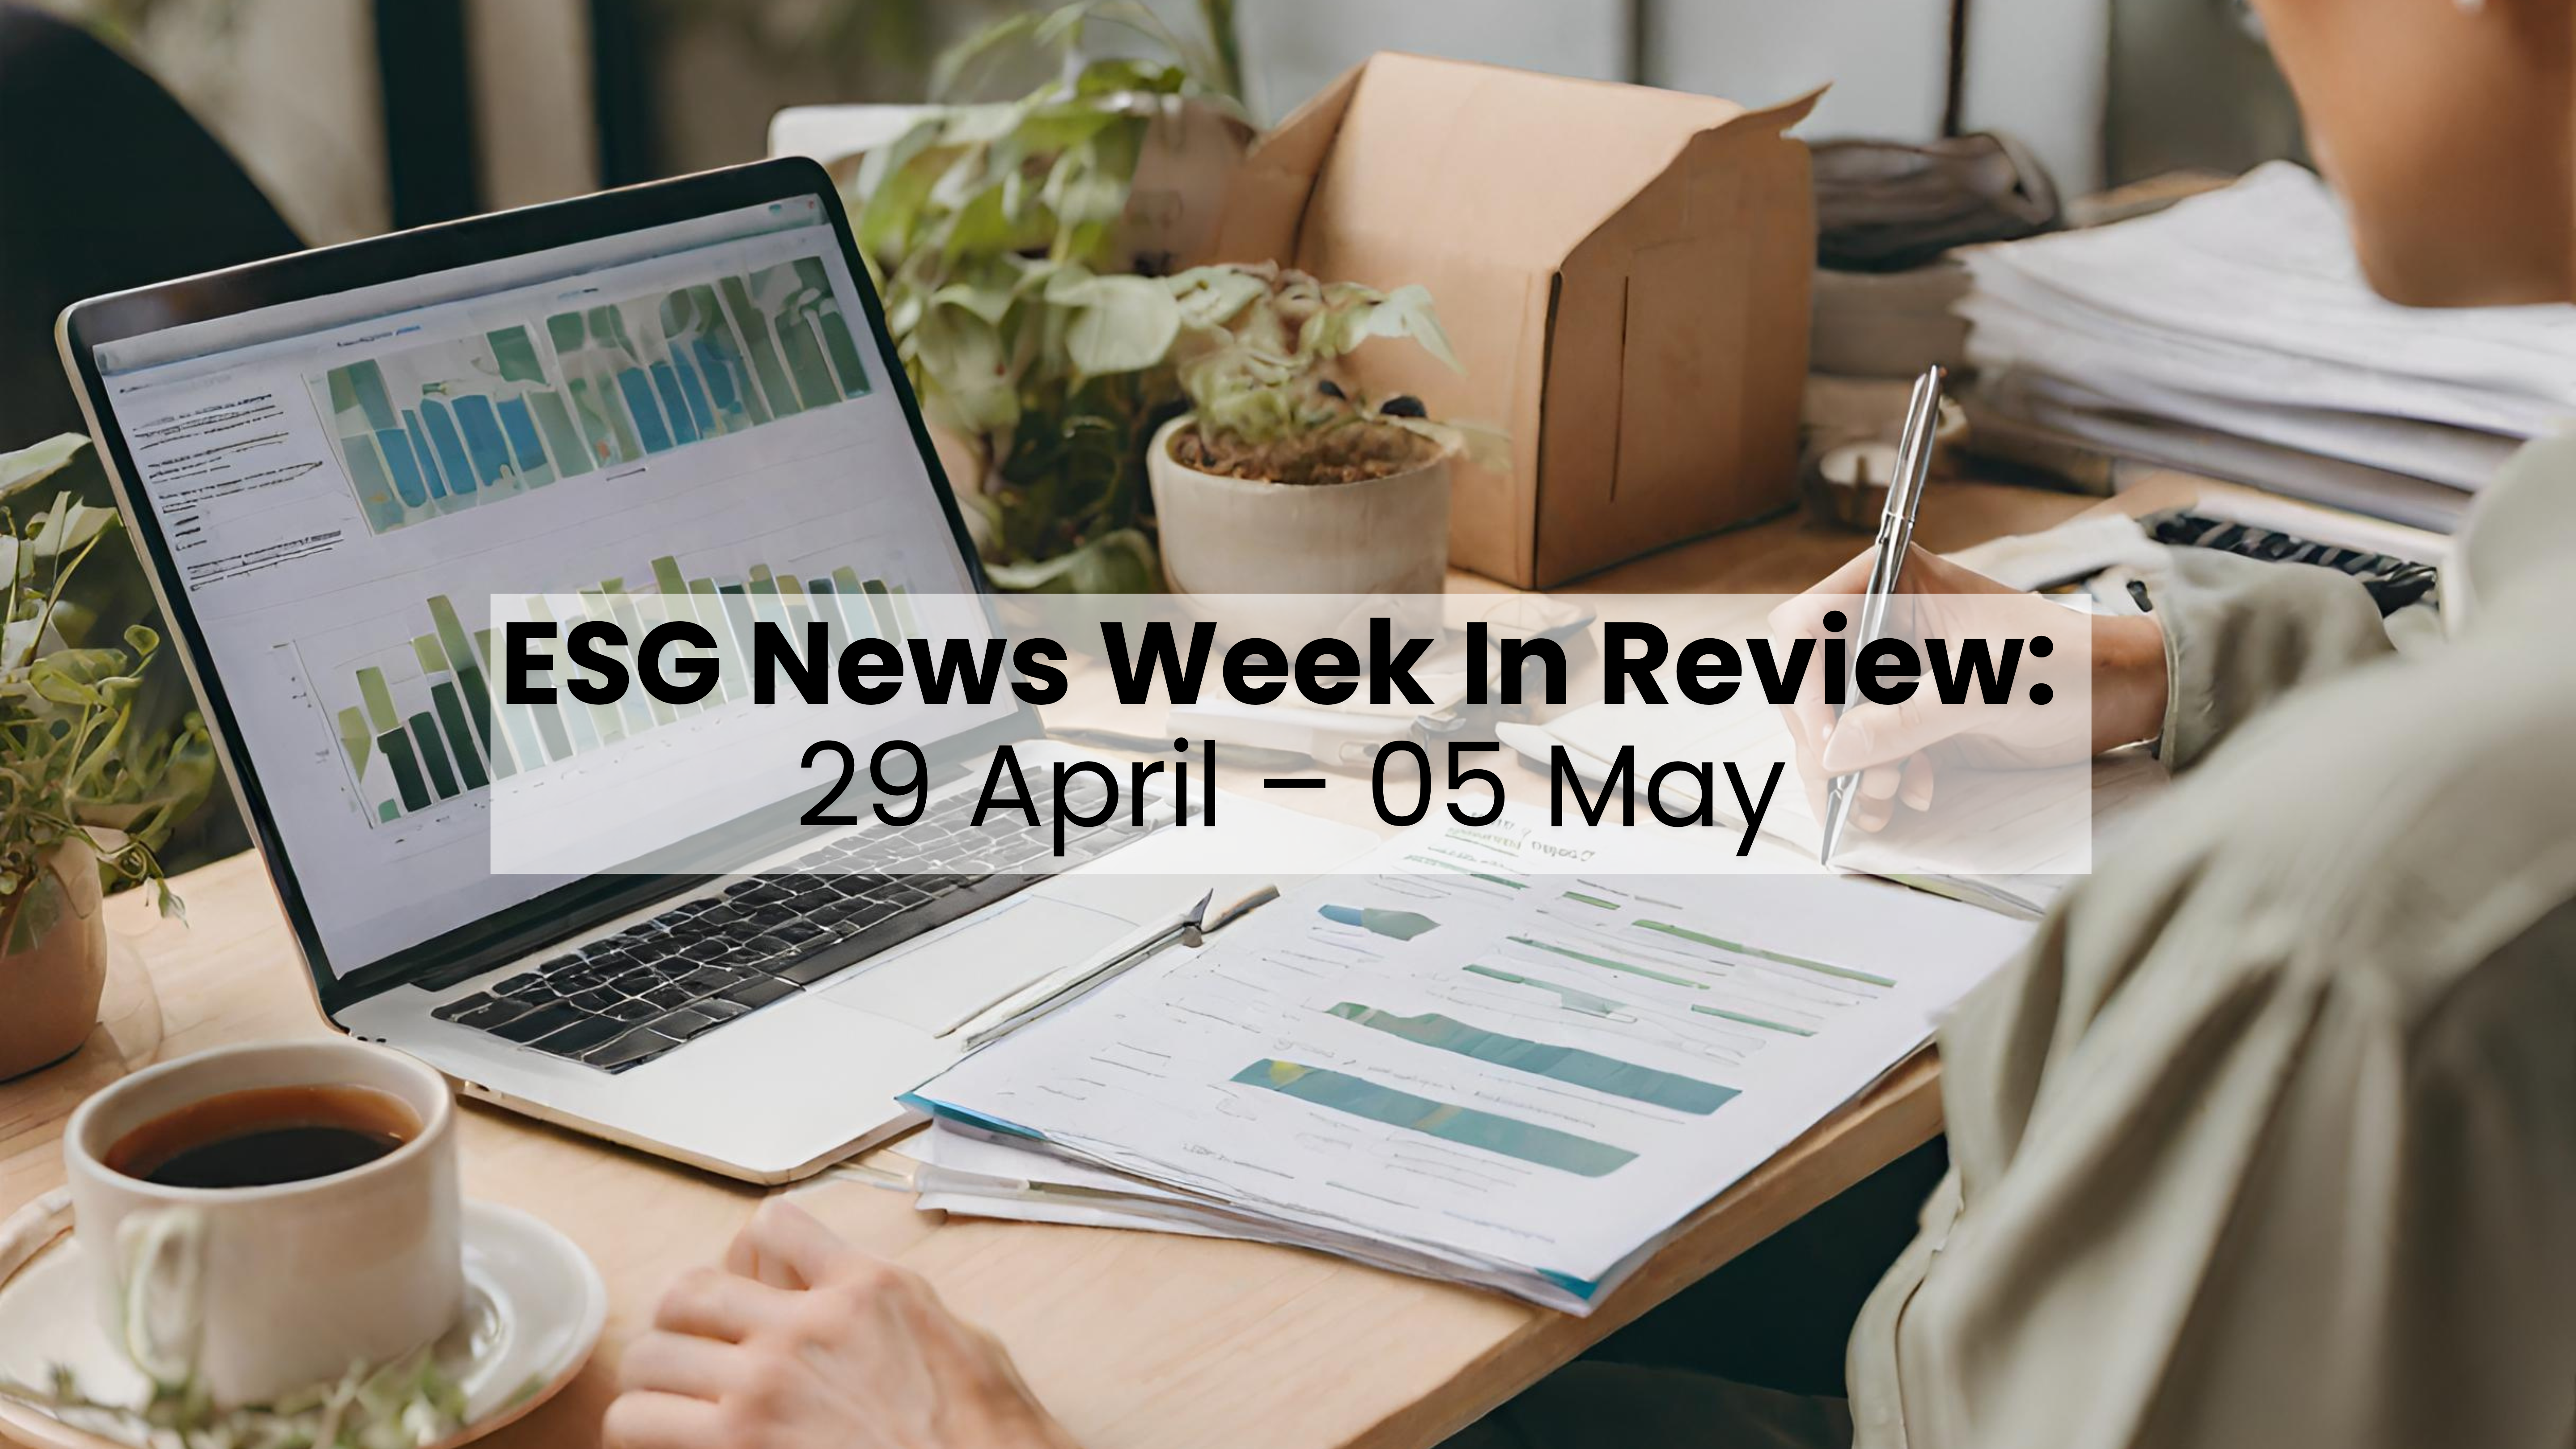 Resumen de la semana de noticias ESG del 29 de abril al 05 de mayo